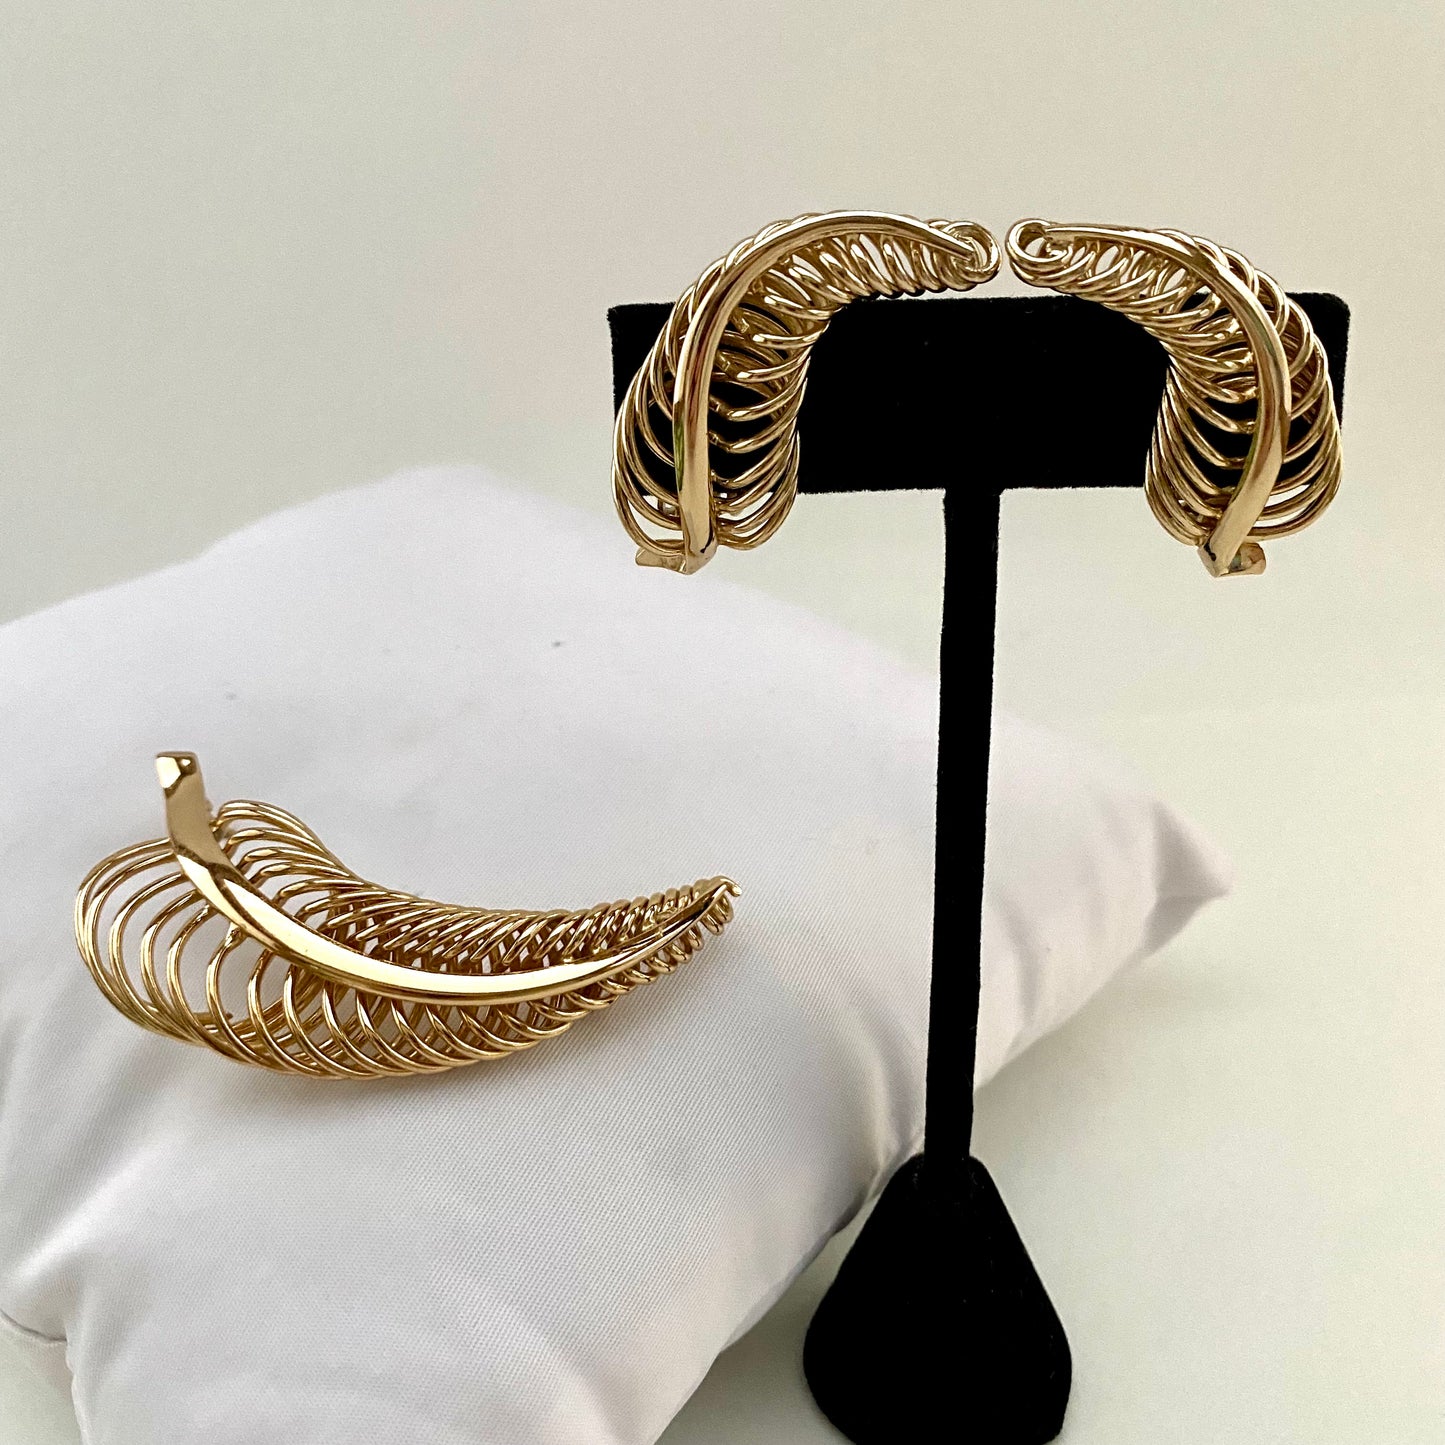 1950s Napier Golden Coil Brooch & Earrings